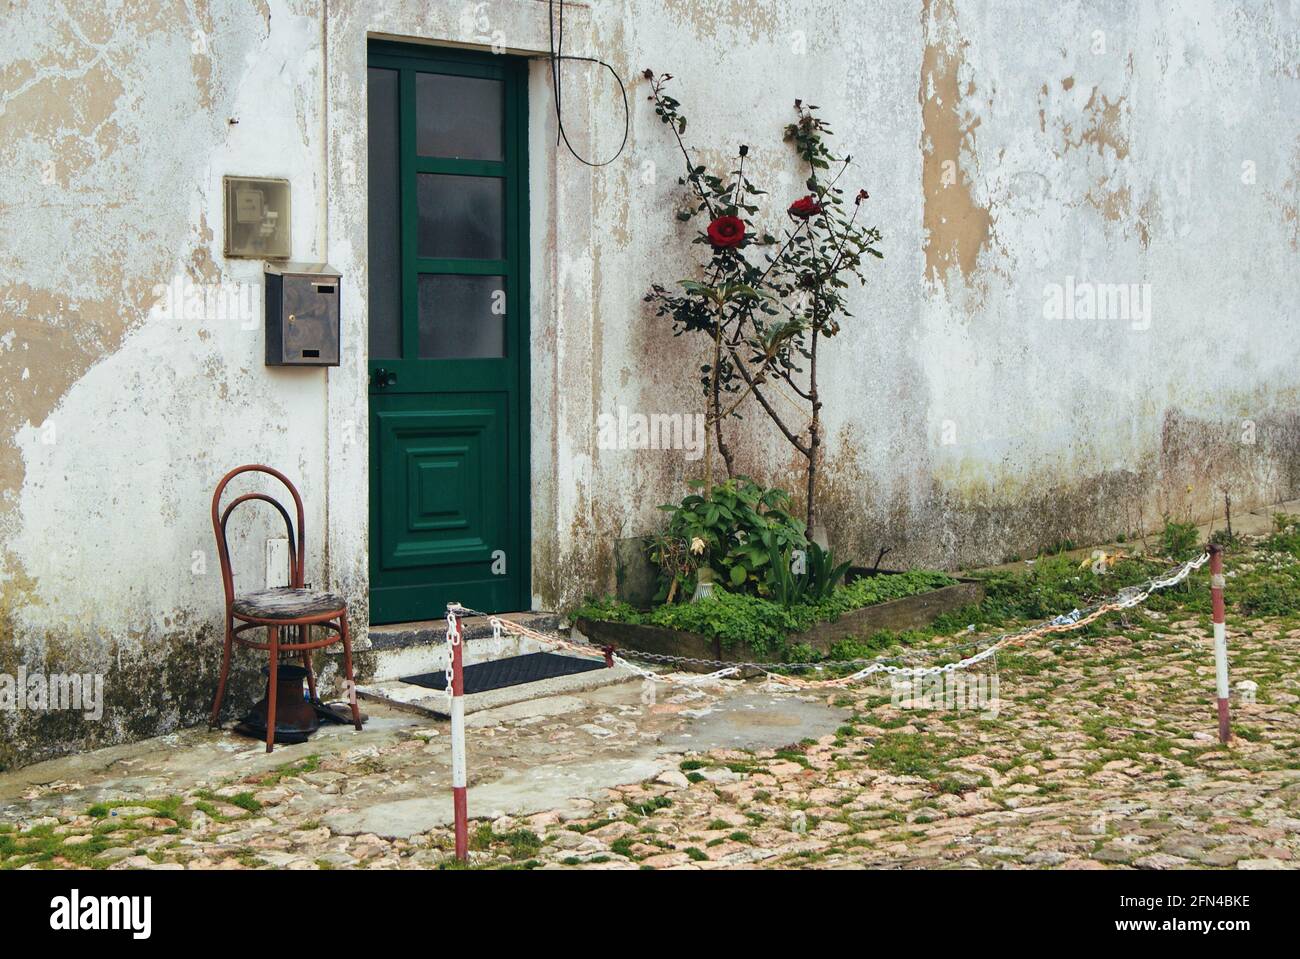 Rustikaler Eingang eines armen und alten Hauses. Eine einfache grüne Tür, eine Rosenpflanze und ein Stuhl. Malerische Szene eines alten Landes. Stockfoto